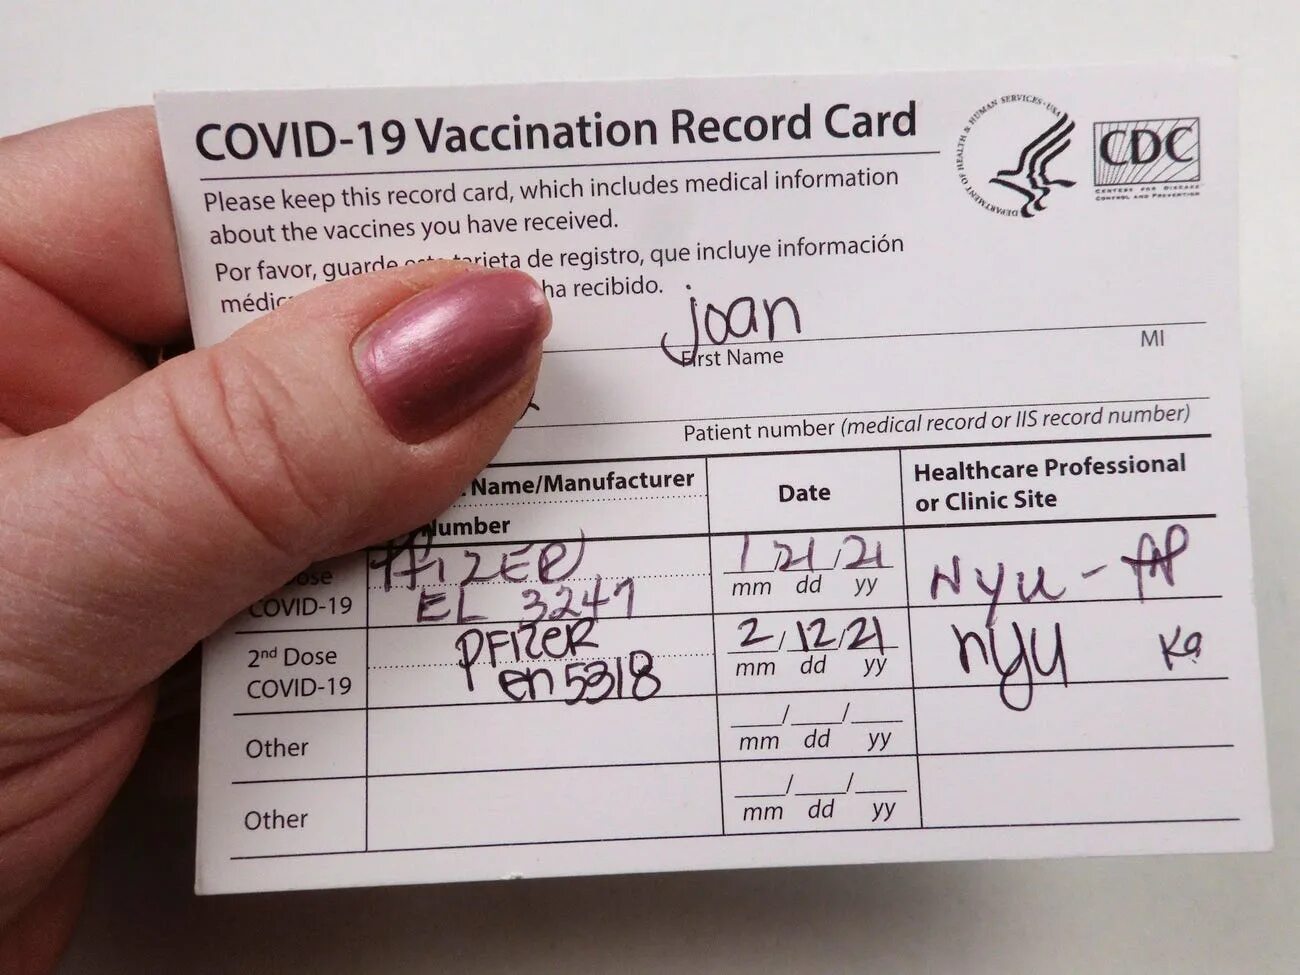 Covid-19 vaccination record Card CDC. CDC Covid vaccine Card. Covid 19 vaccination Card. Covid vaccination record Card. Covid 19 s